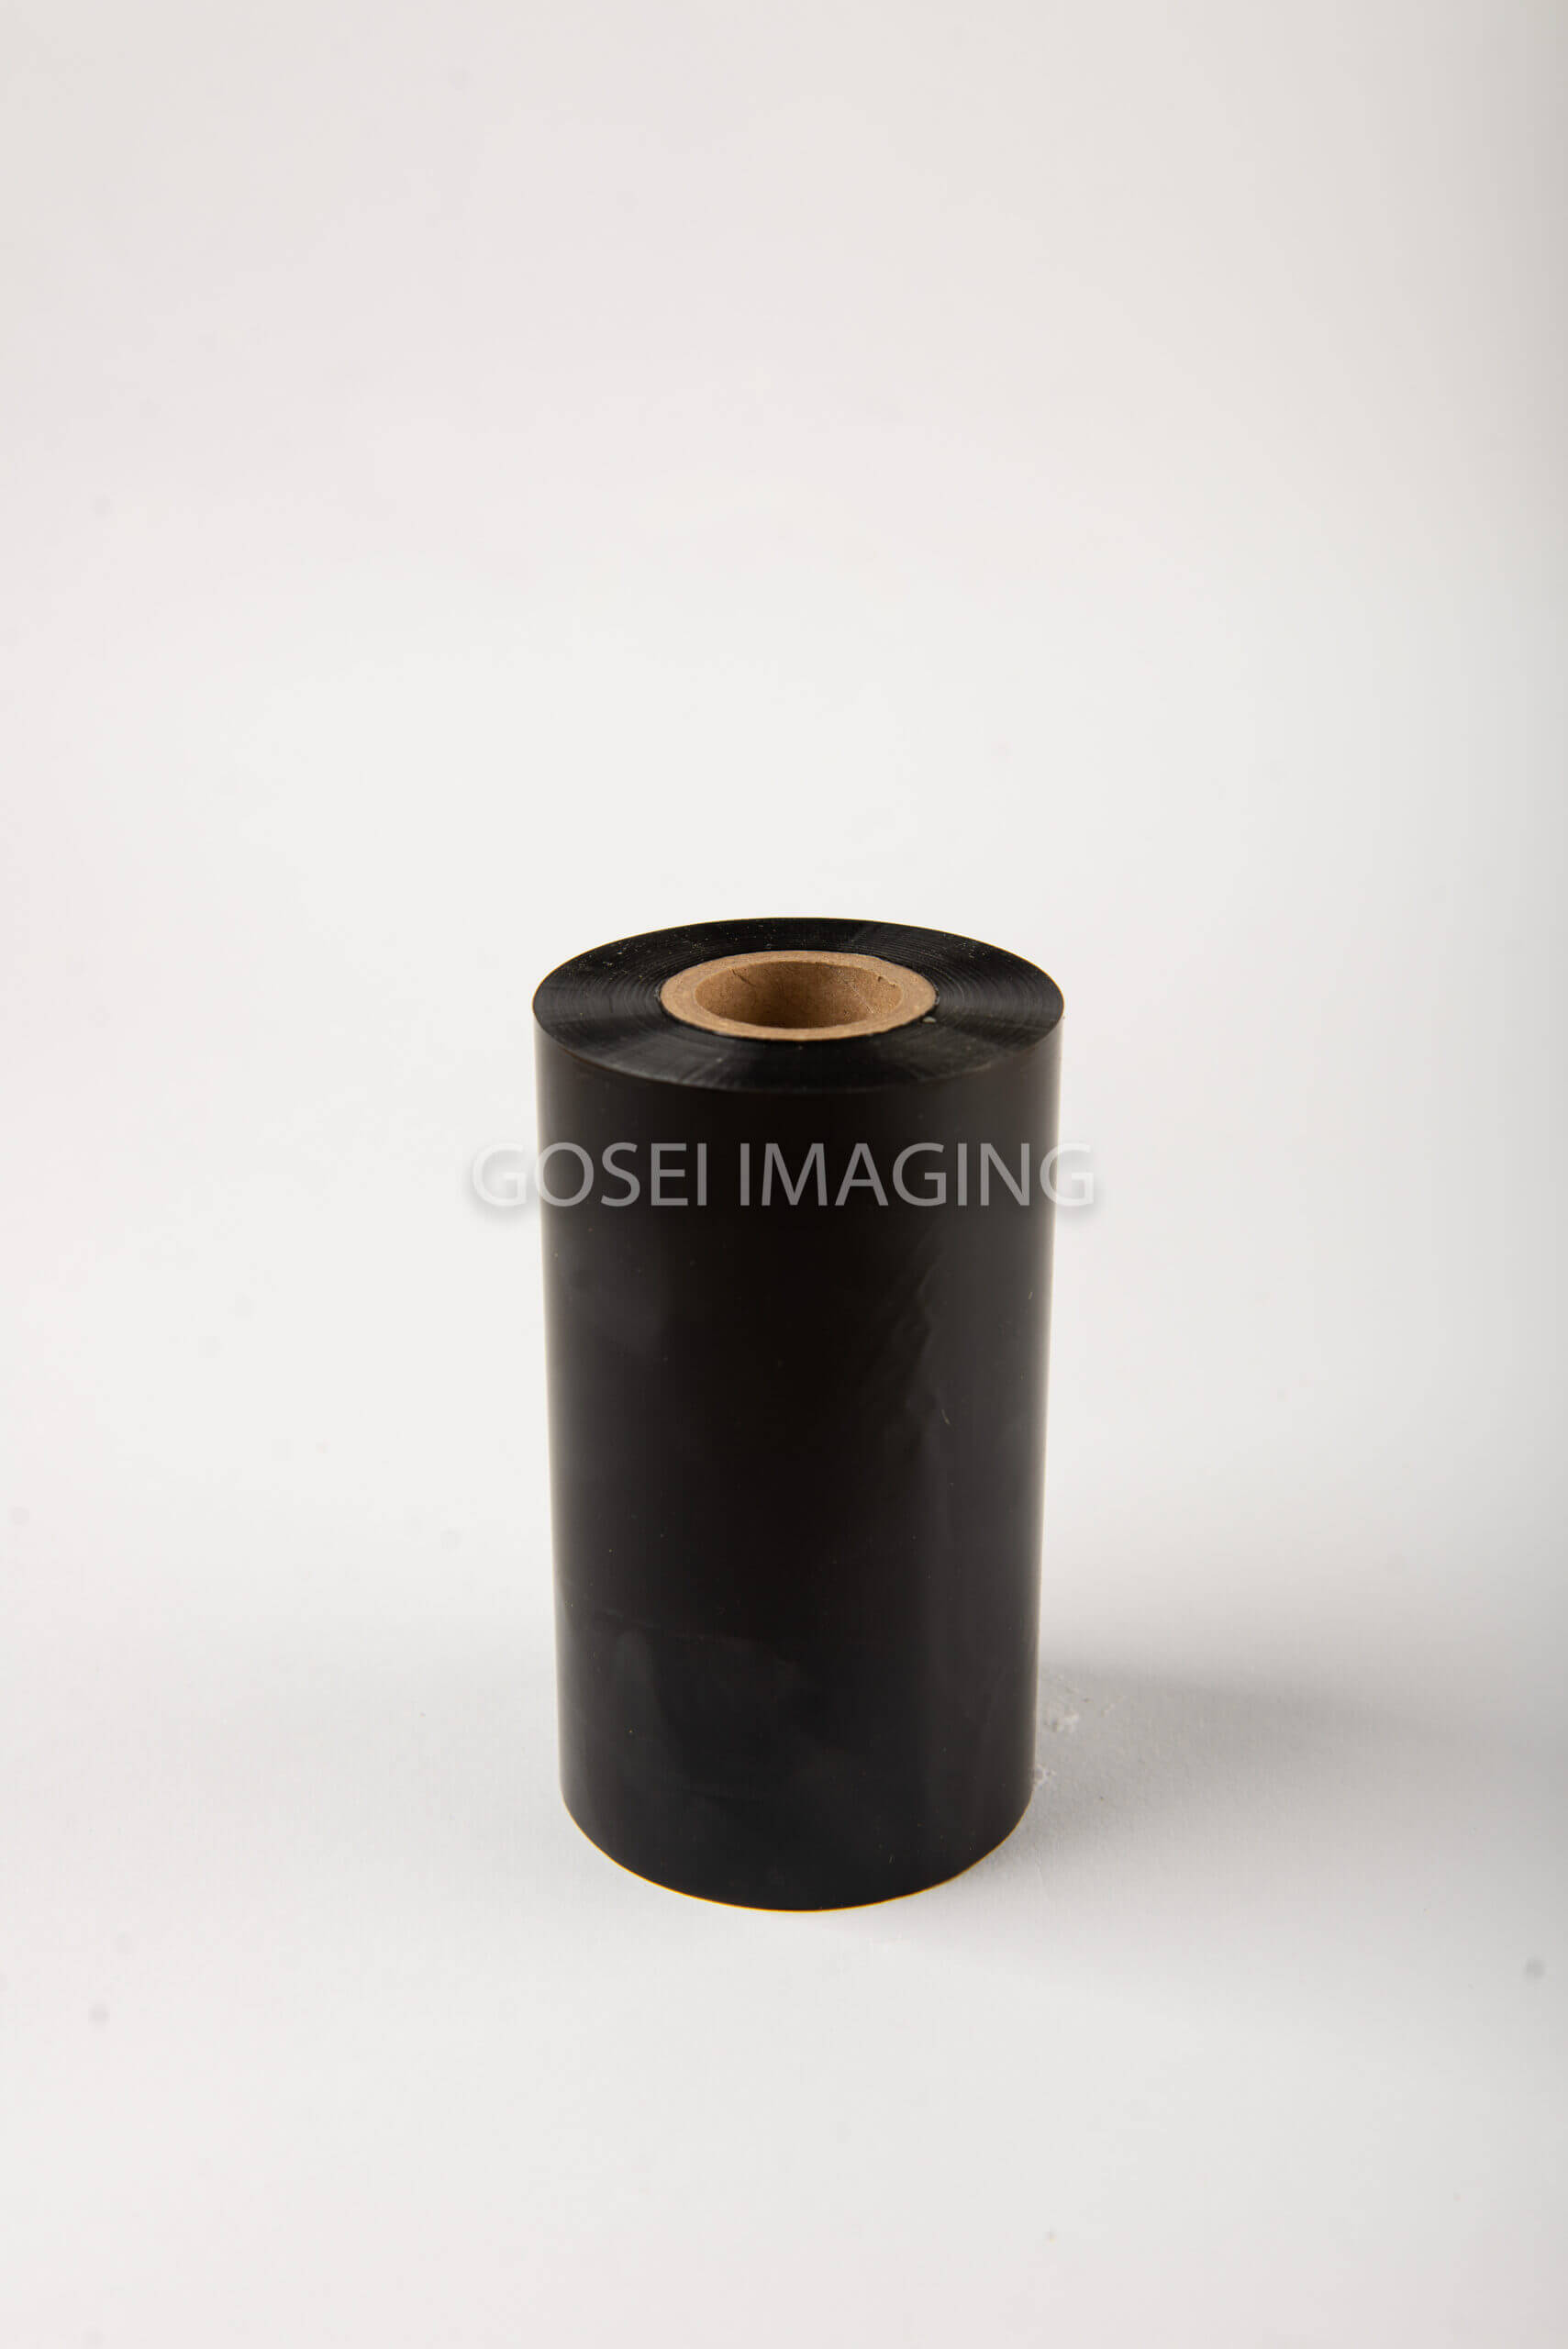 Resin Ribbon- 110mm x 300m [10 pcs]